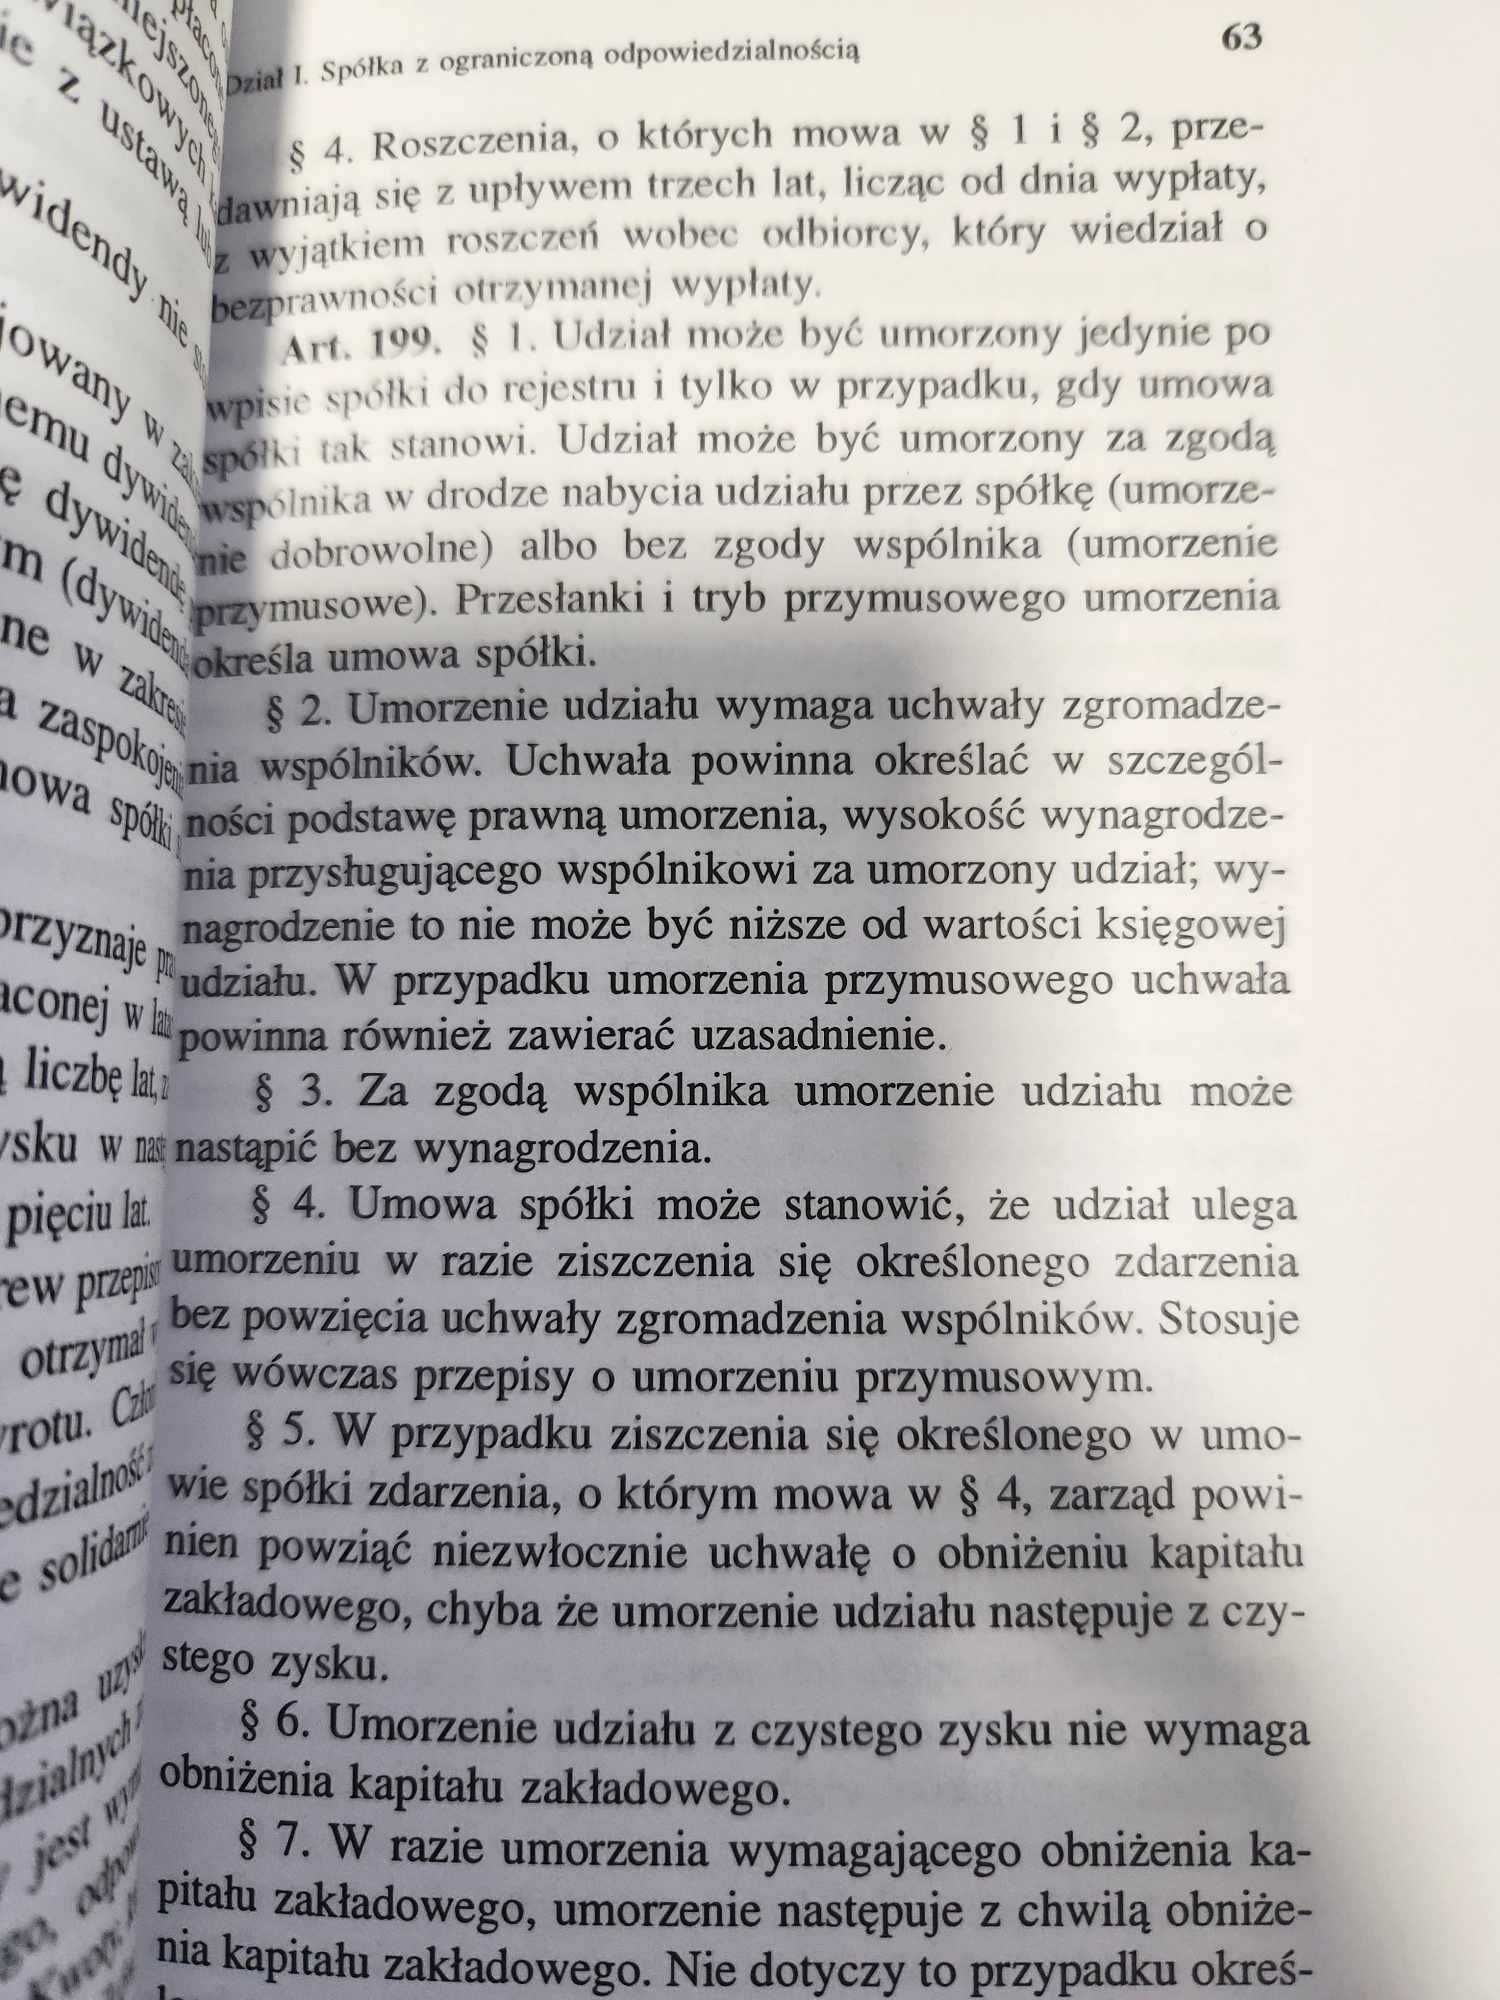 Kodeks spółek handlowych red. Wędrychowski 2001